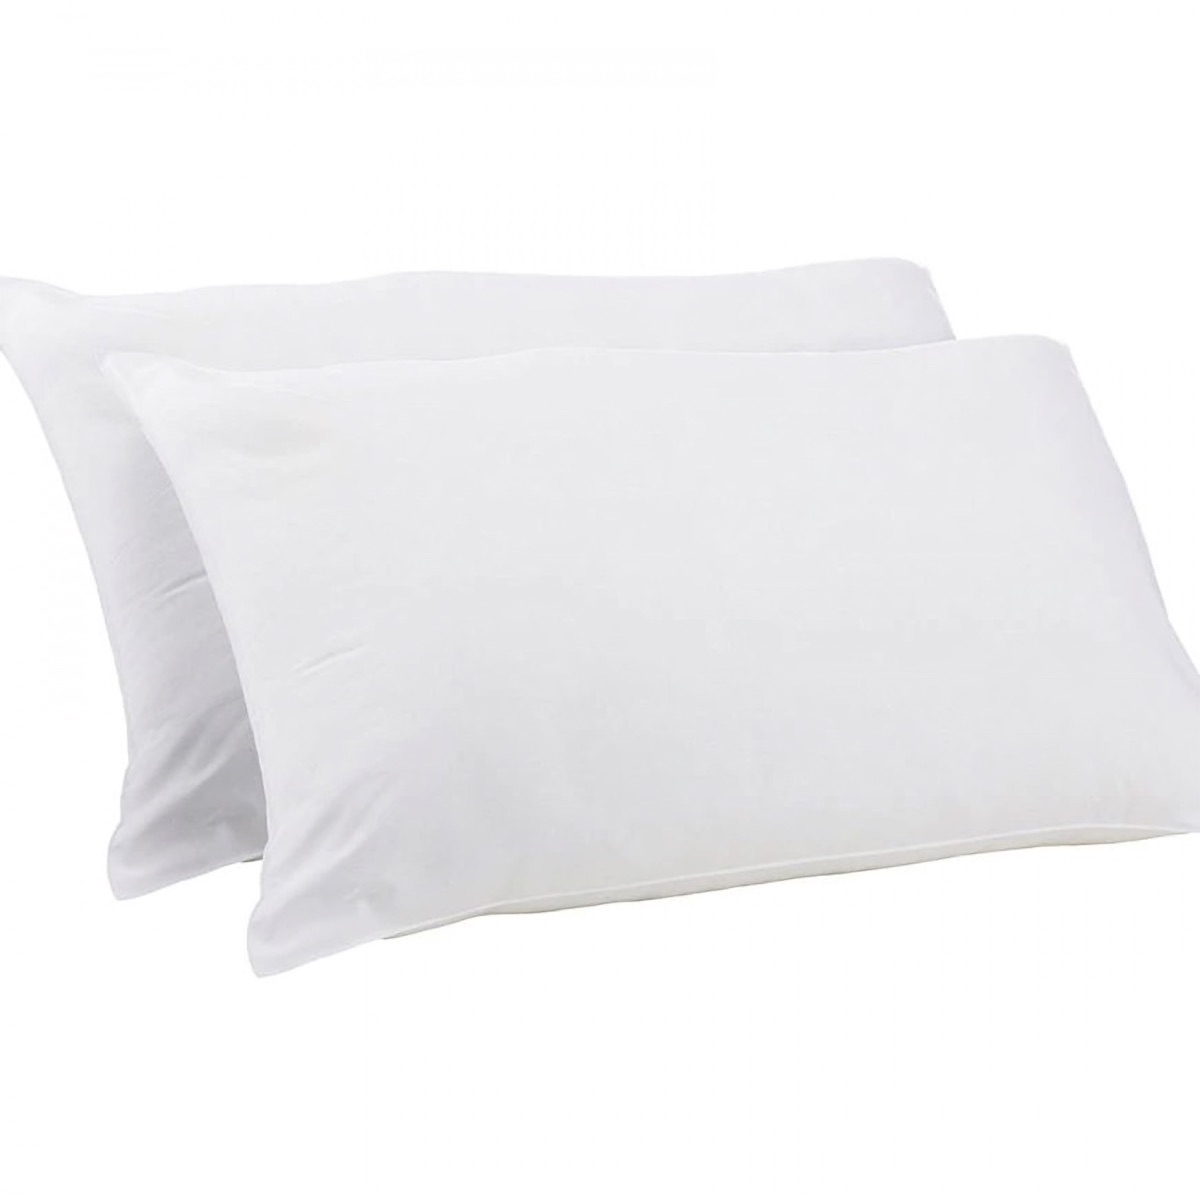 Pillows (x4)